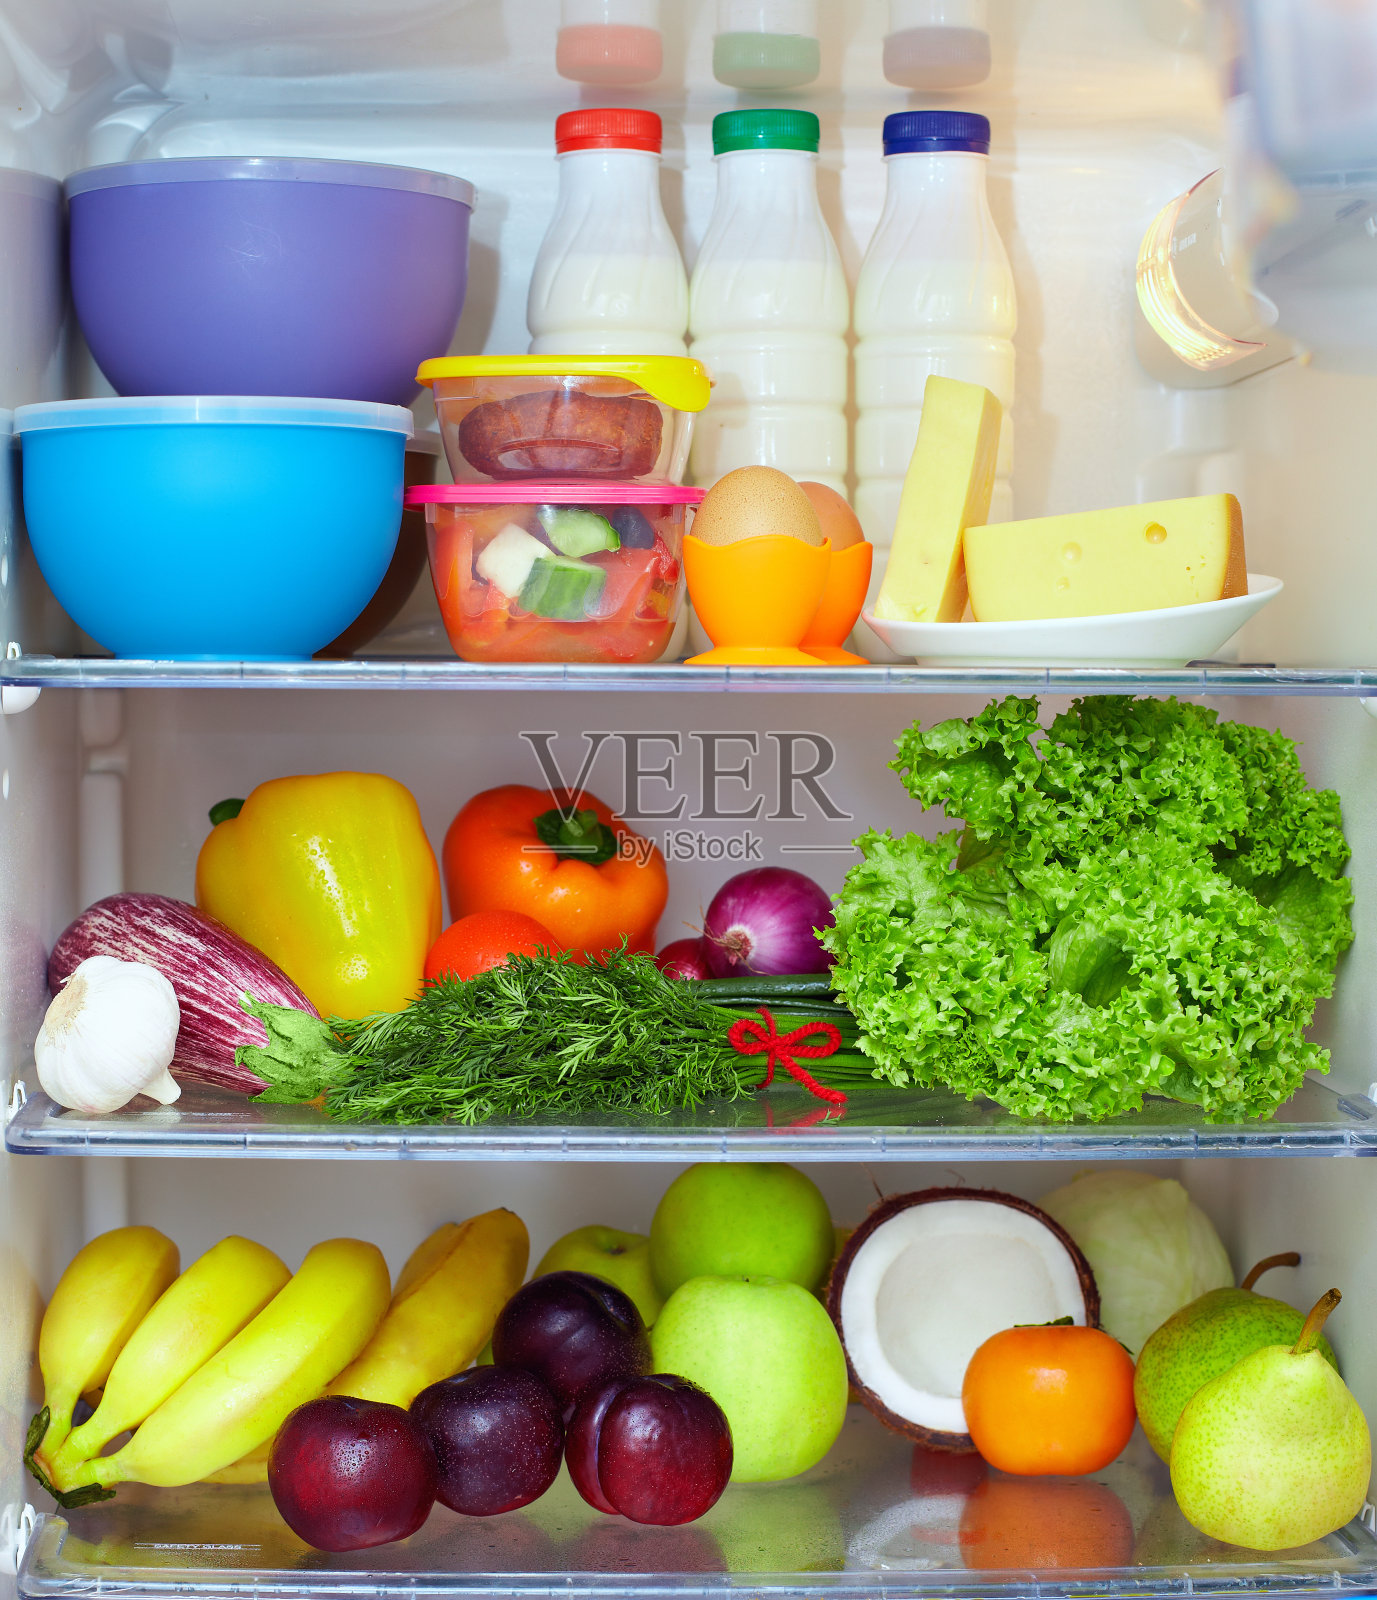 冰箱里装满了健康食品。水果，蔬菜和乳制品照片摄影图片